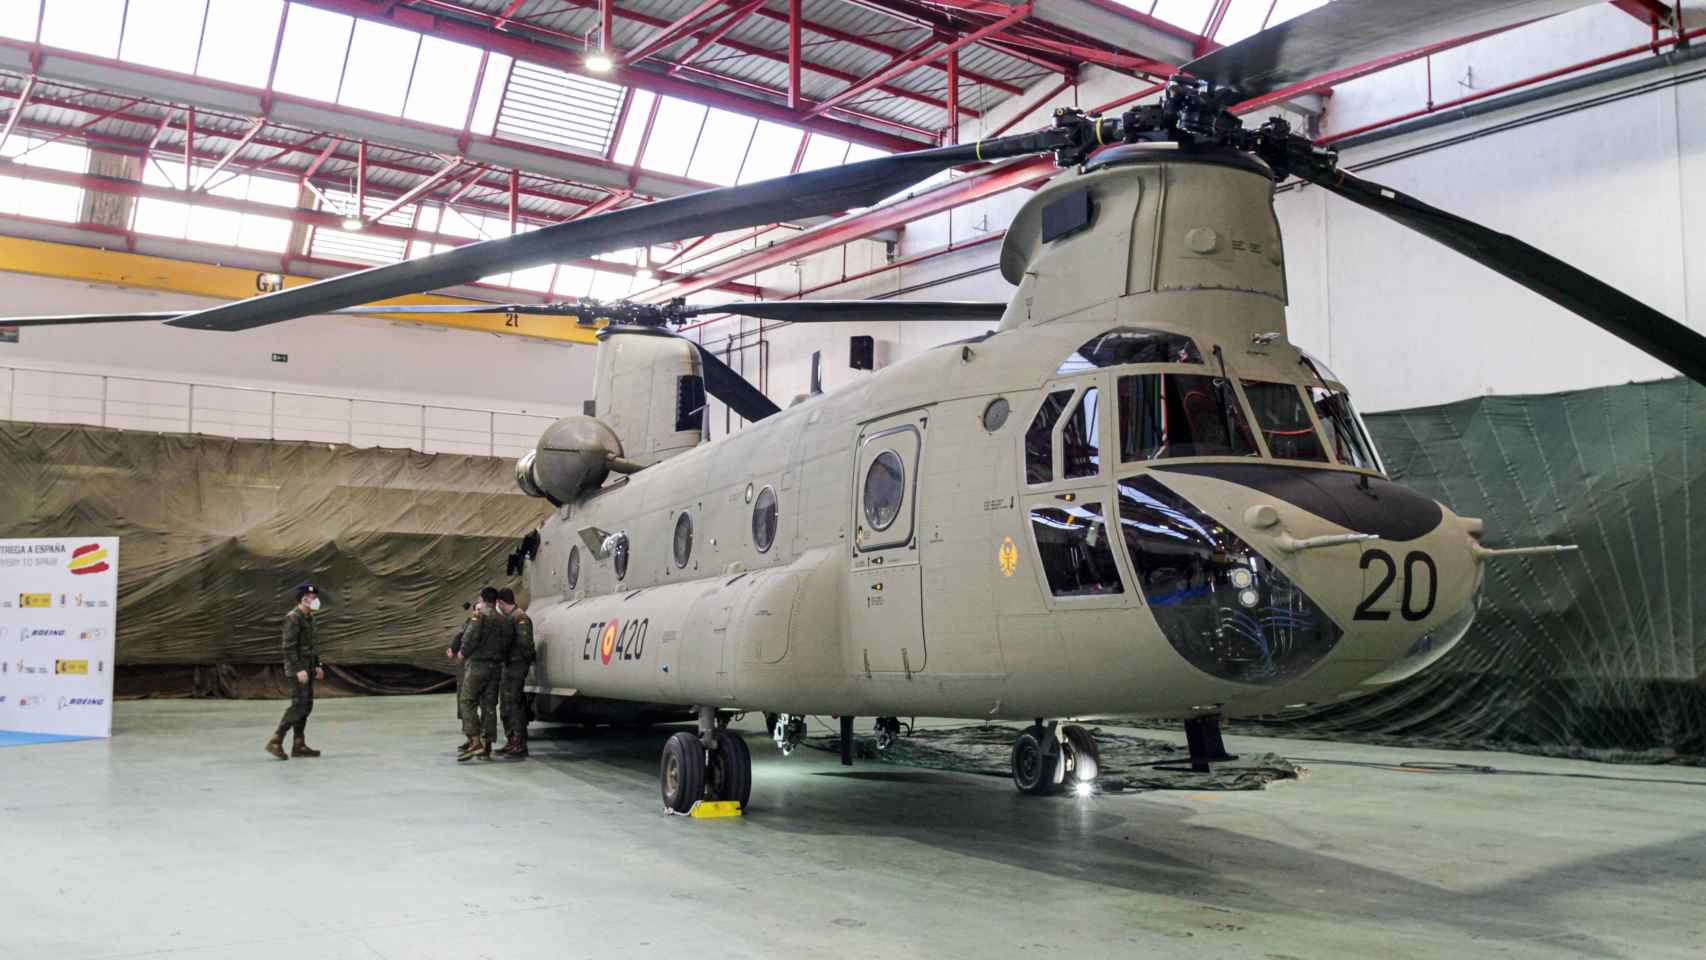 así es el helicóptero chinook que ha pilotado el rey felipe: vuela a 315 km/h y carga 11 toneladas